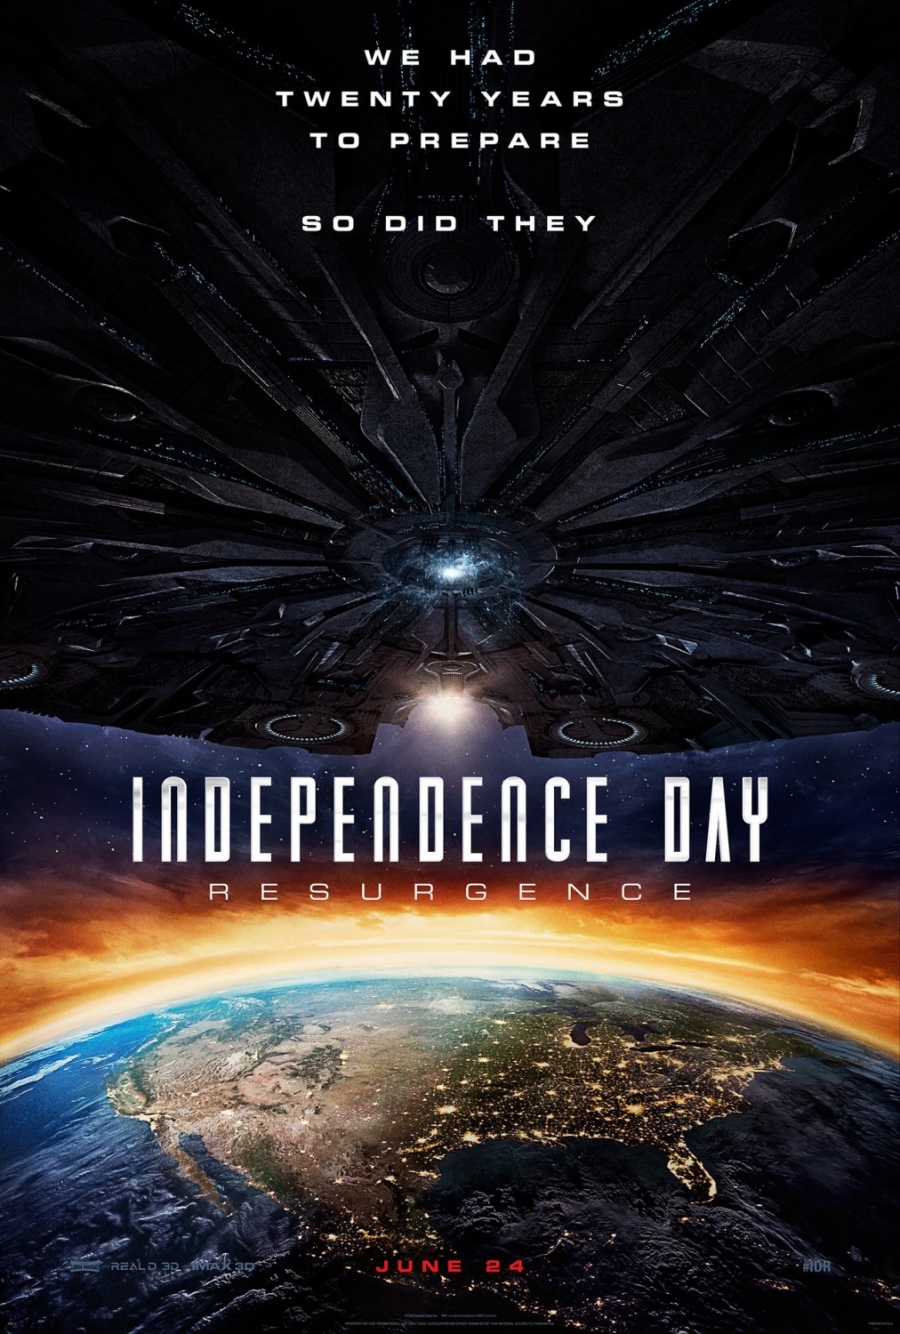 ดูหนังออนไลน์ฟรี INDEPENDENCE DAY 2 RESURGENCE (2016) ไอดี 4 สงครามใหม่วันบดโลก